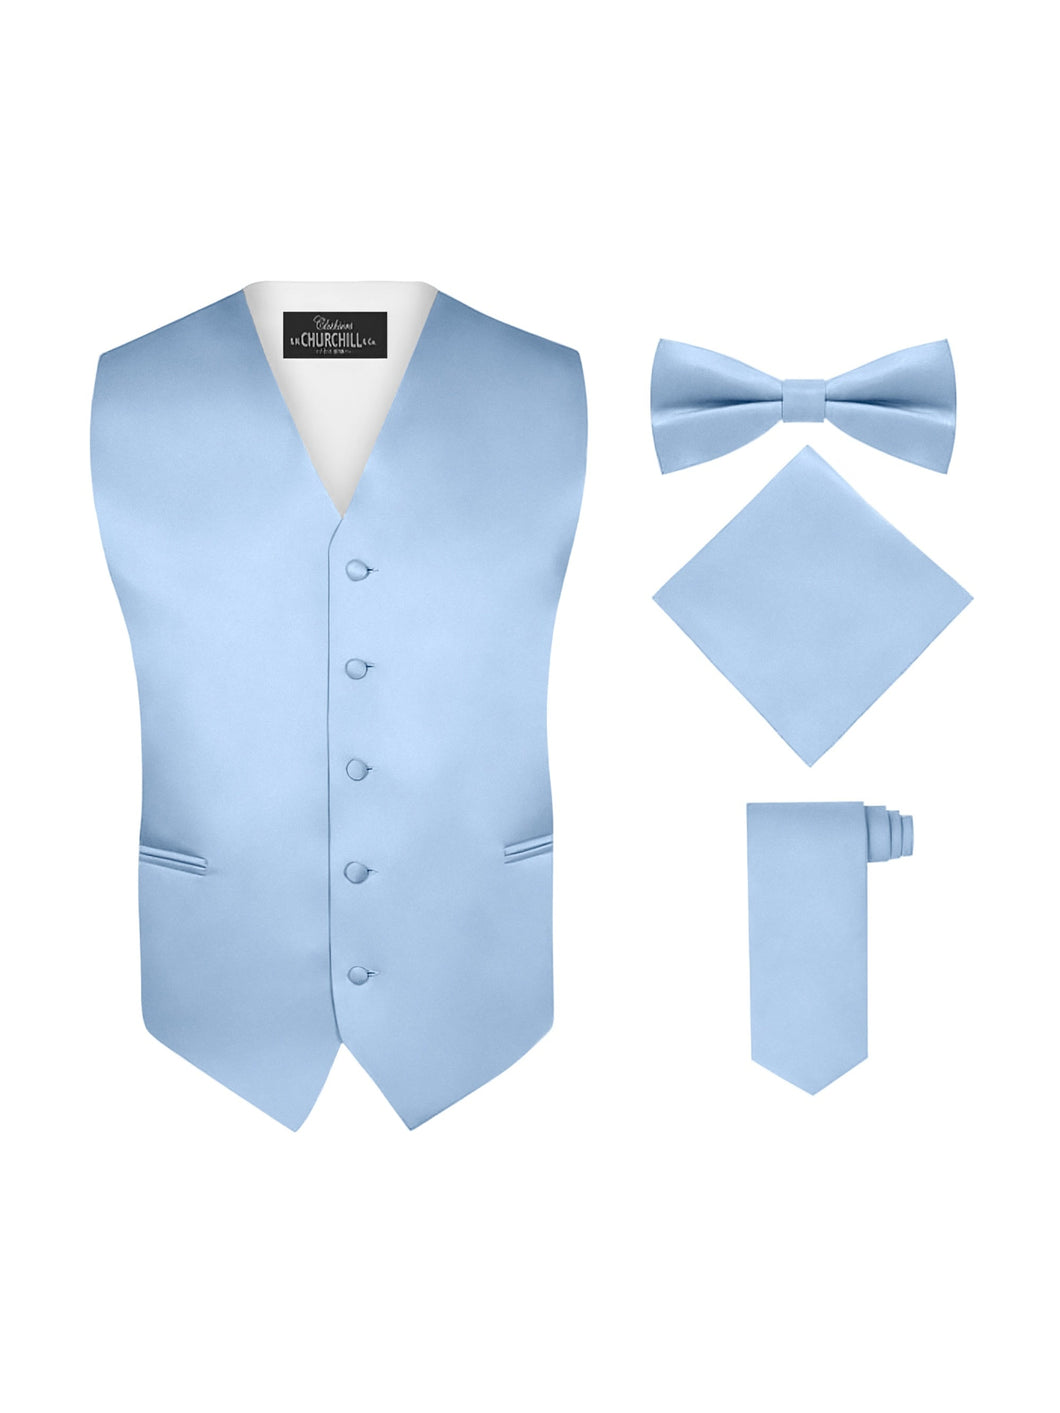 S.H. Churchill & Co. Men's 4 Piece Light Blue Vest Set, with Bow Tie, Neck Tie & Pocket Hankie